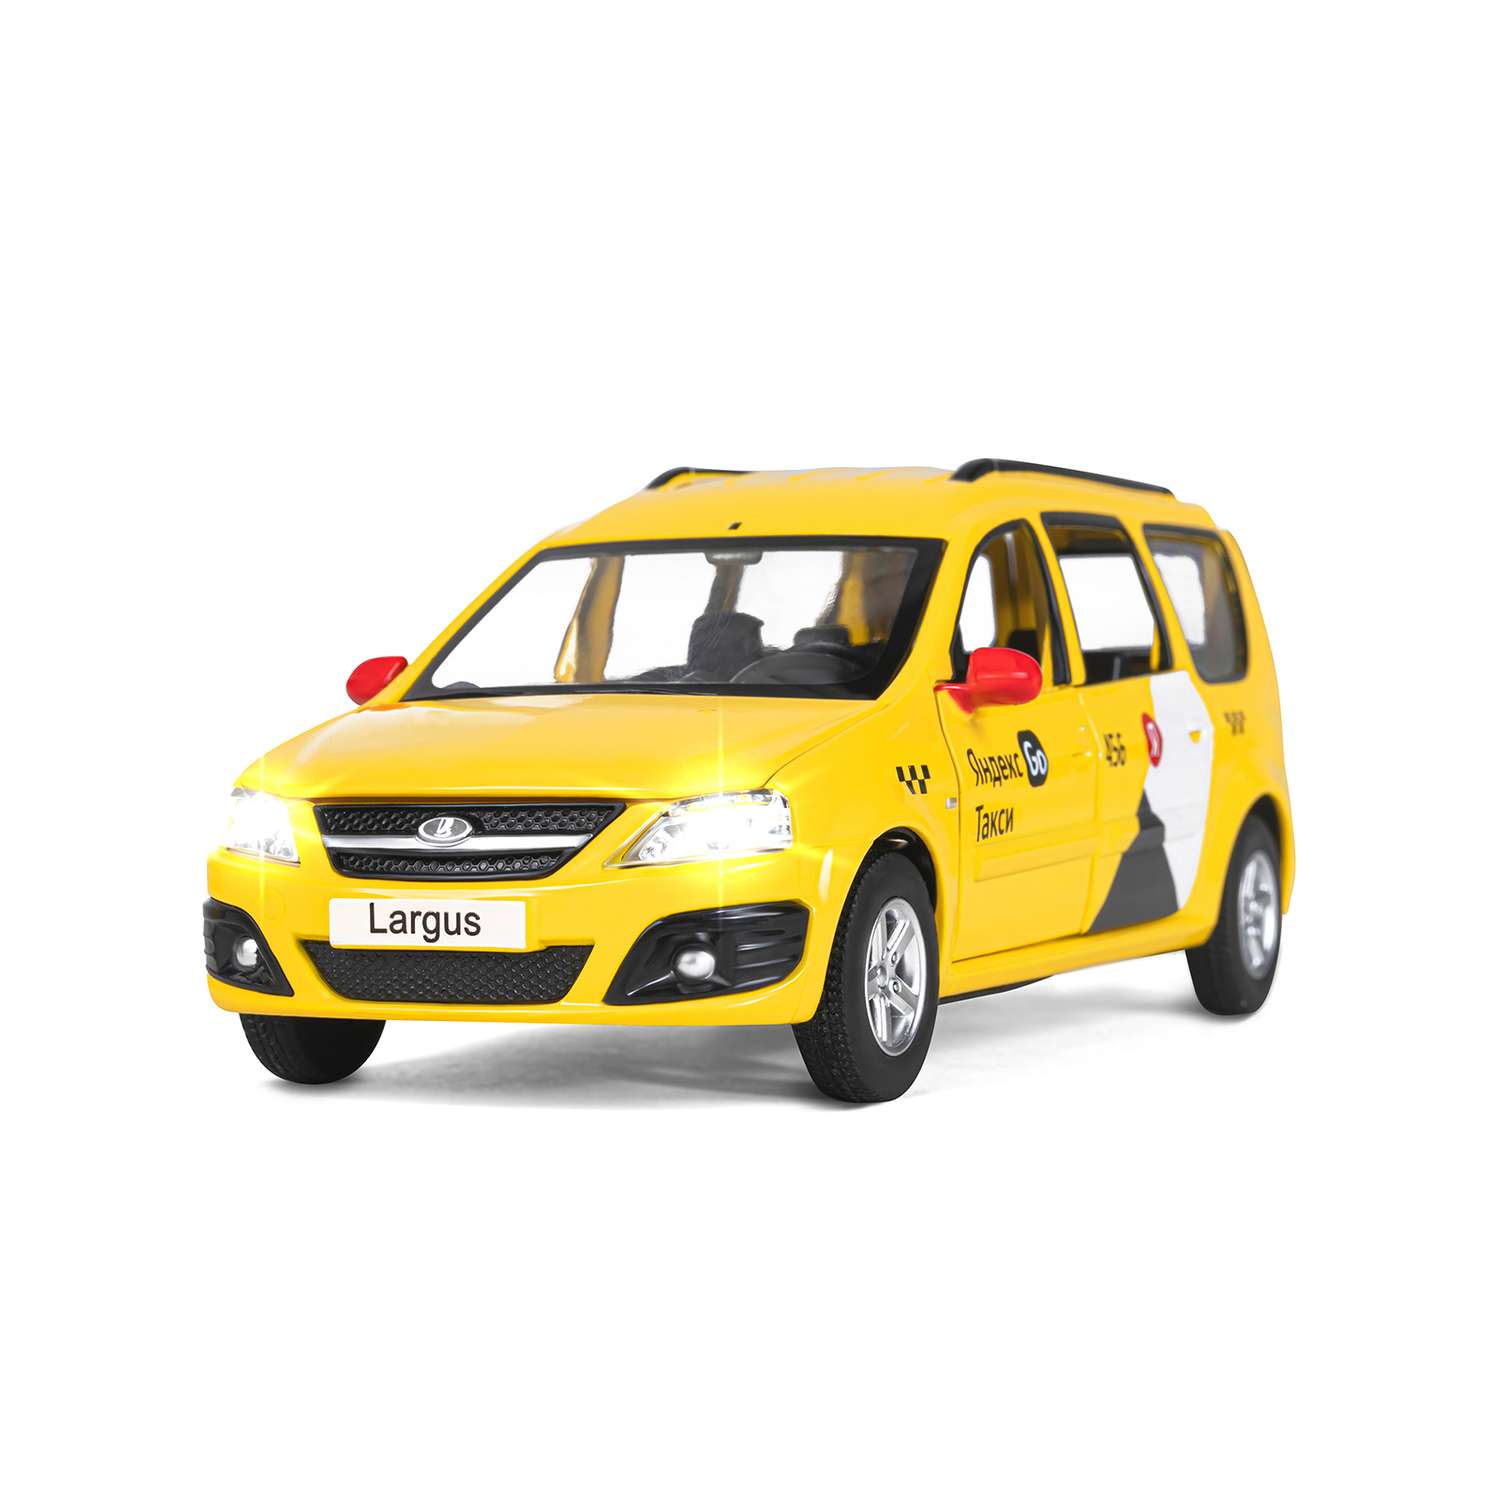 Машинка металлическая Яндекс GO игрушка детская LADA LARGUS 1:24 желтый Озвучено Алисой JB1251481 - фото 9